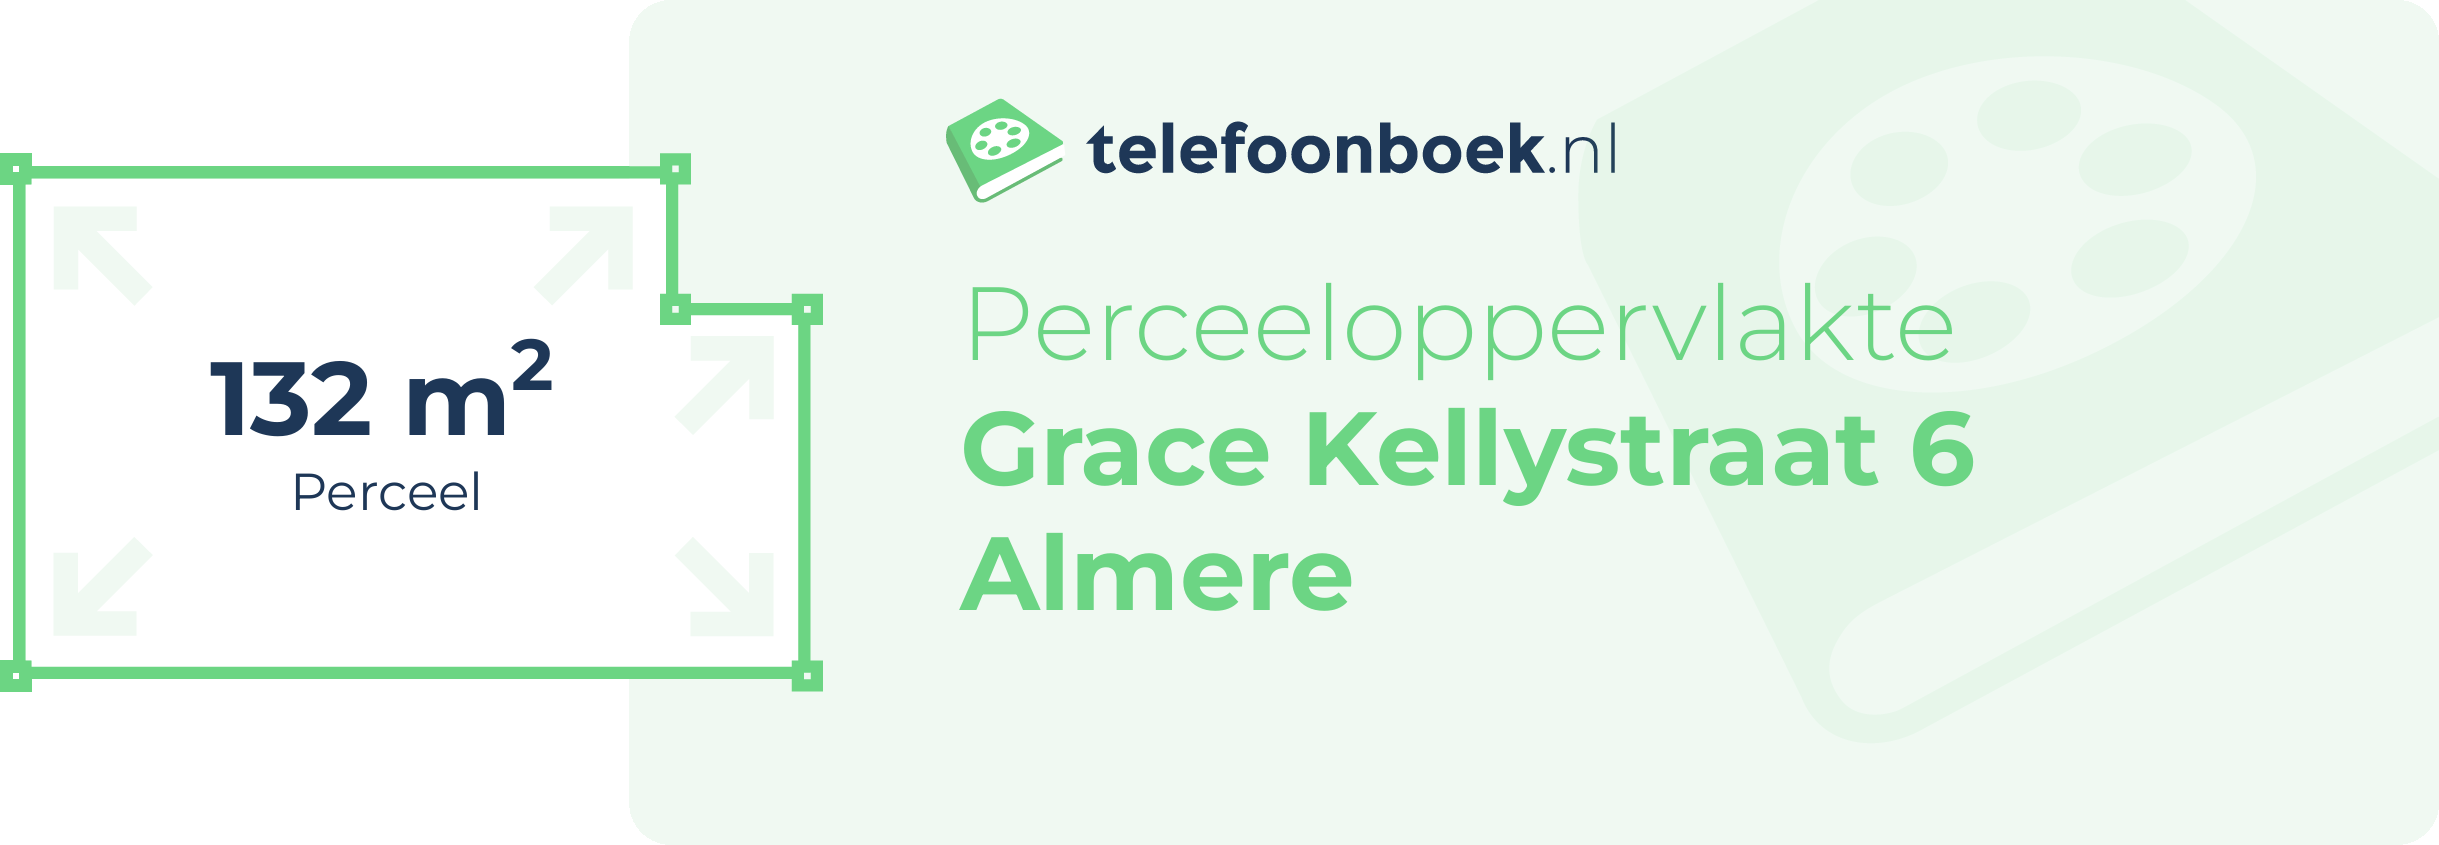 Perceeloppervlakte Grace Kellystraat 6 Almere